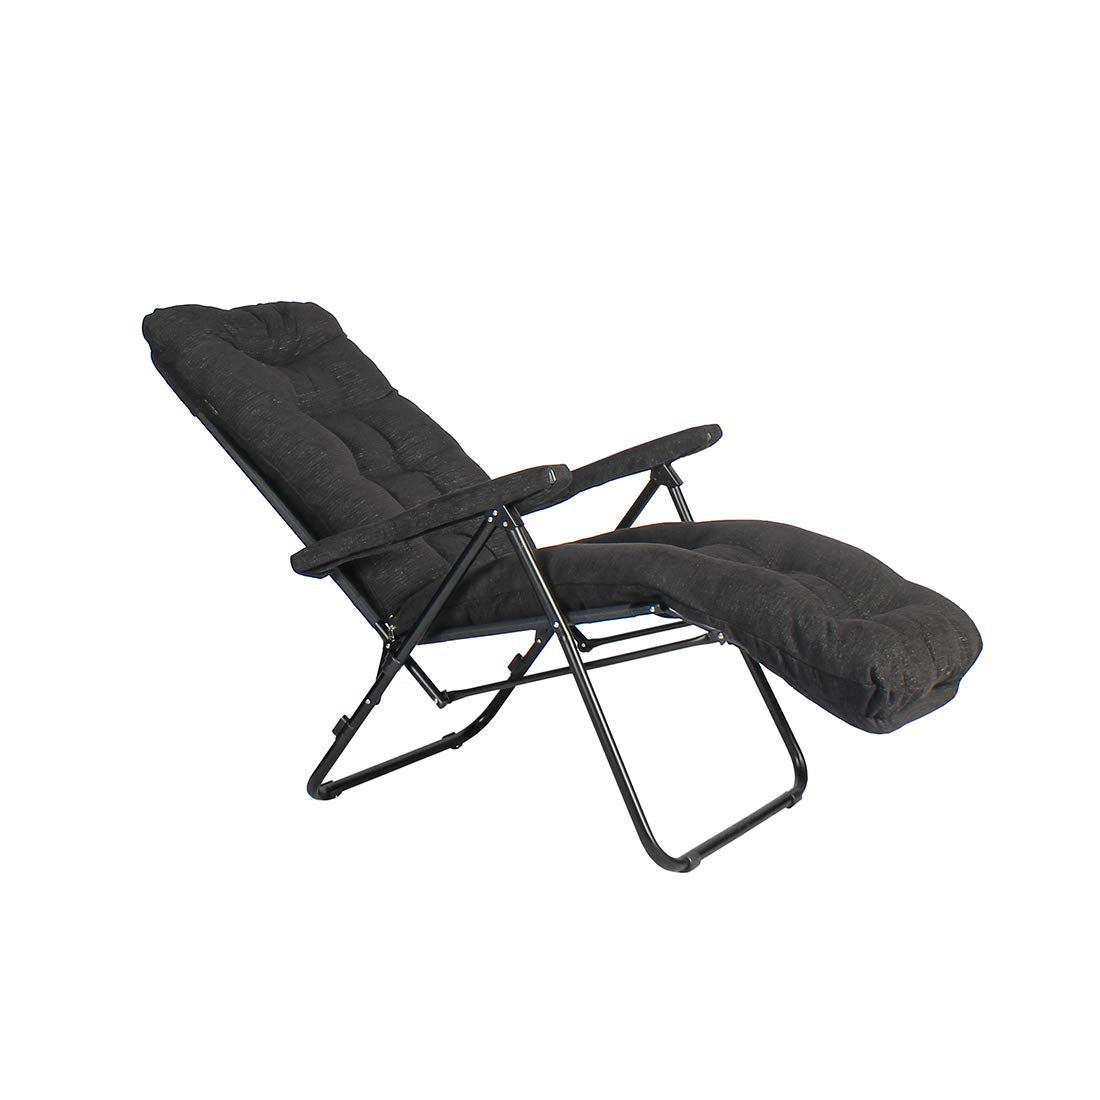 Furlay Foldable Recliner Chair Recron Cushion